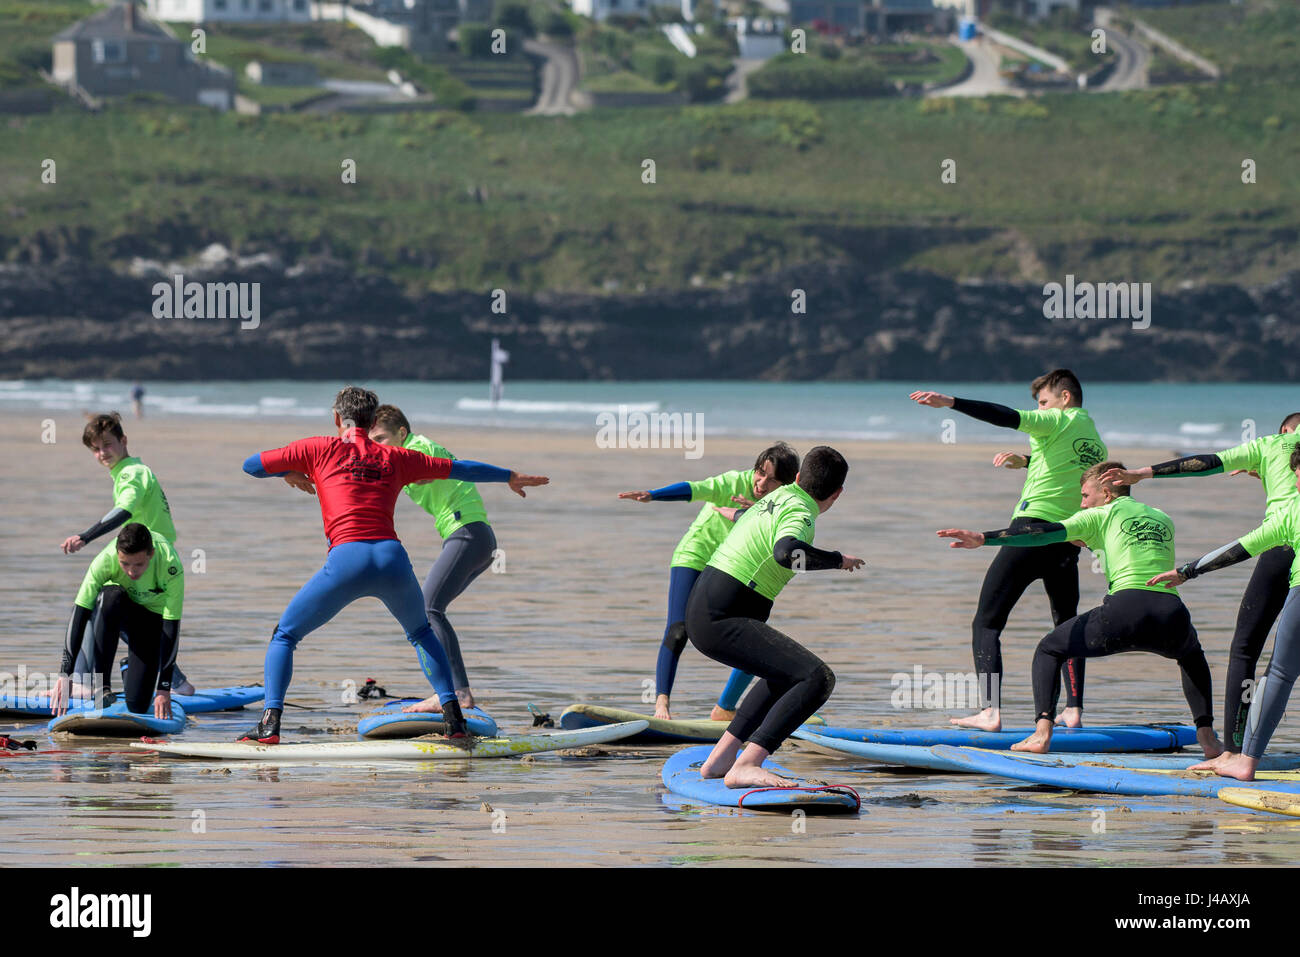 Une école de surf instructeur novices Newquay Cornwall Surf surfer l'apprentissage des apprenants de l'enseignement Coaching Formation Banque D'Images